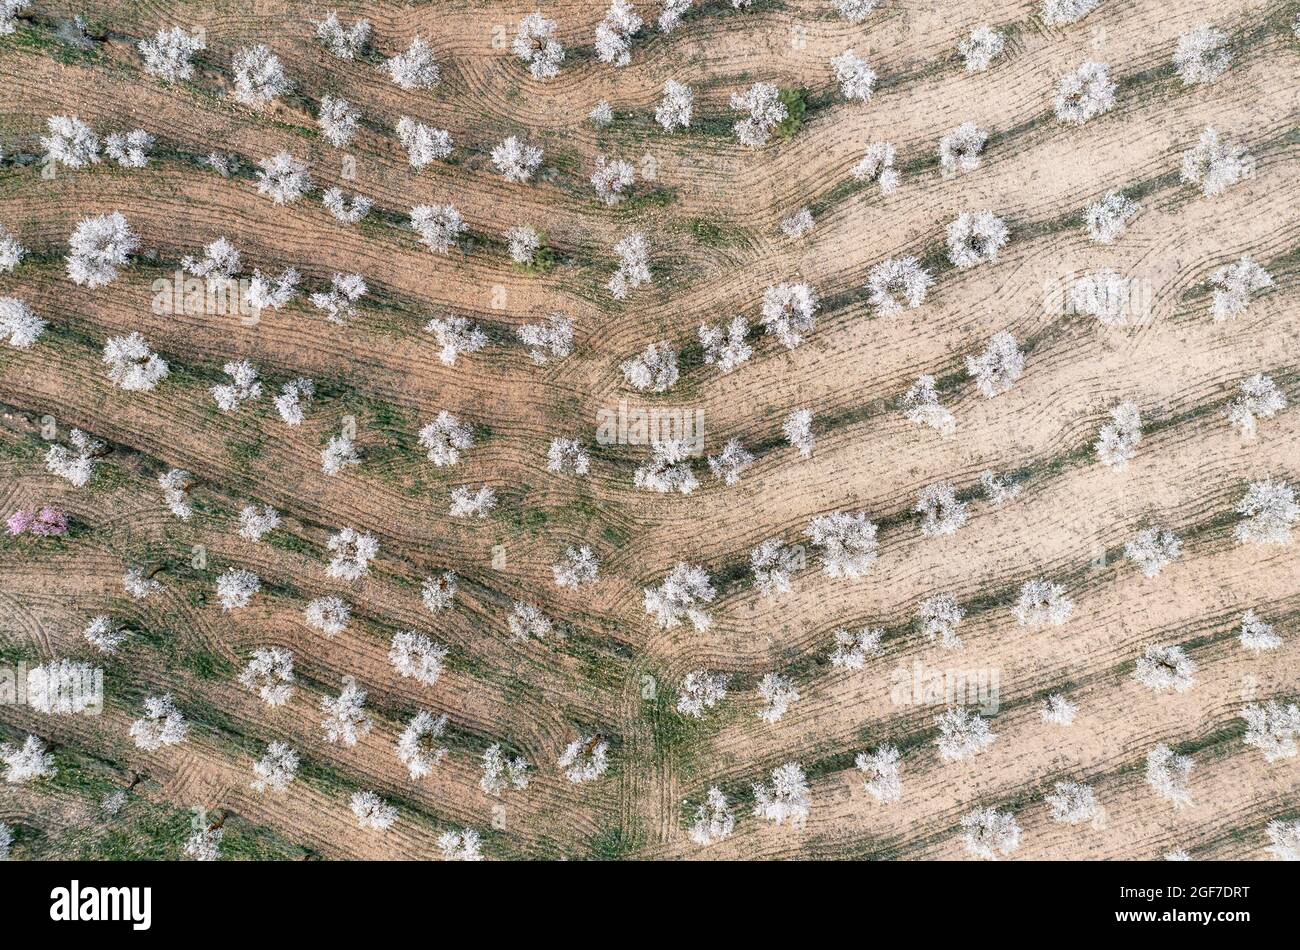 Amandiers cultivés (Prunus dulcis) en pleine fleur en février, vue aérienne, tir de drone, province d'Almeria, Andalousie, Espagne Banque D'Images